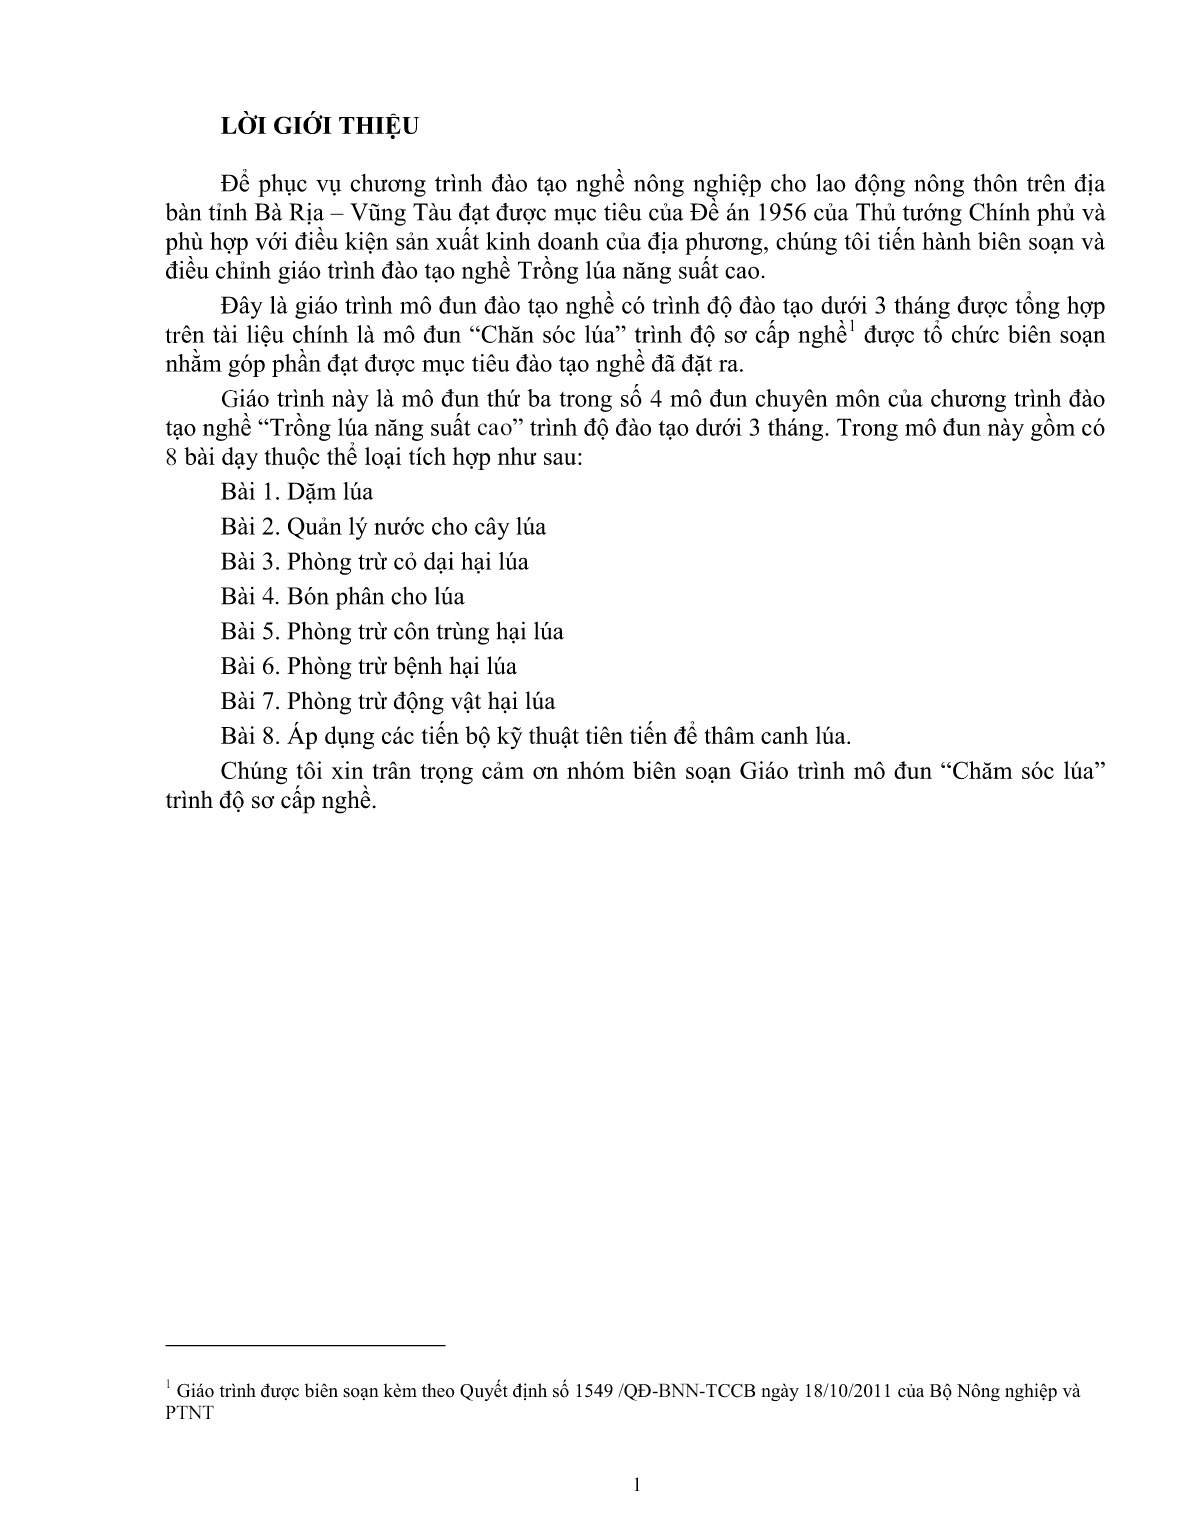 Giáo trình mô đun Chăm sóc lúa (Trình độ: Đào tạo dưới 03 tháng) trang 2